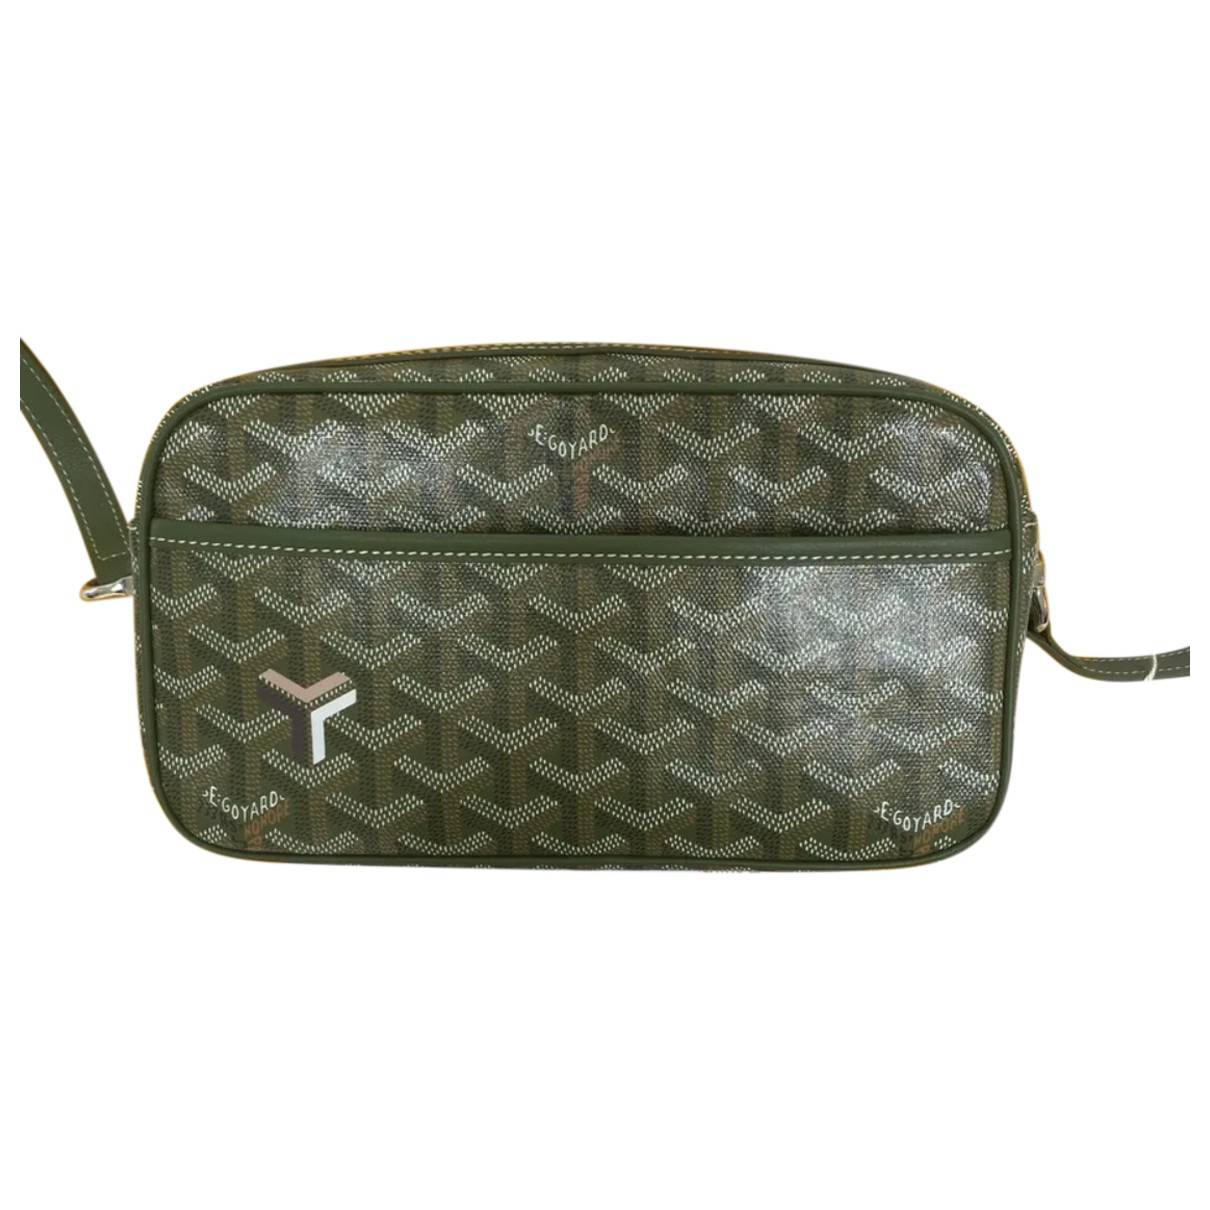 Cap vert leather crossbody bag Goyard Black in Leather - 33931826